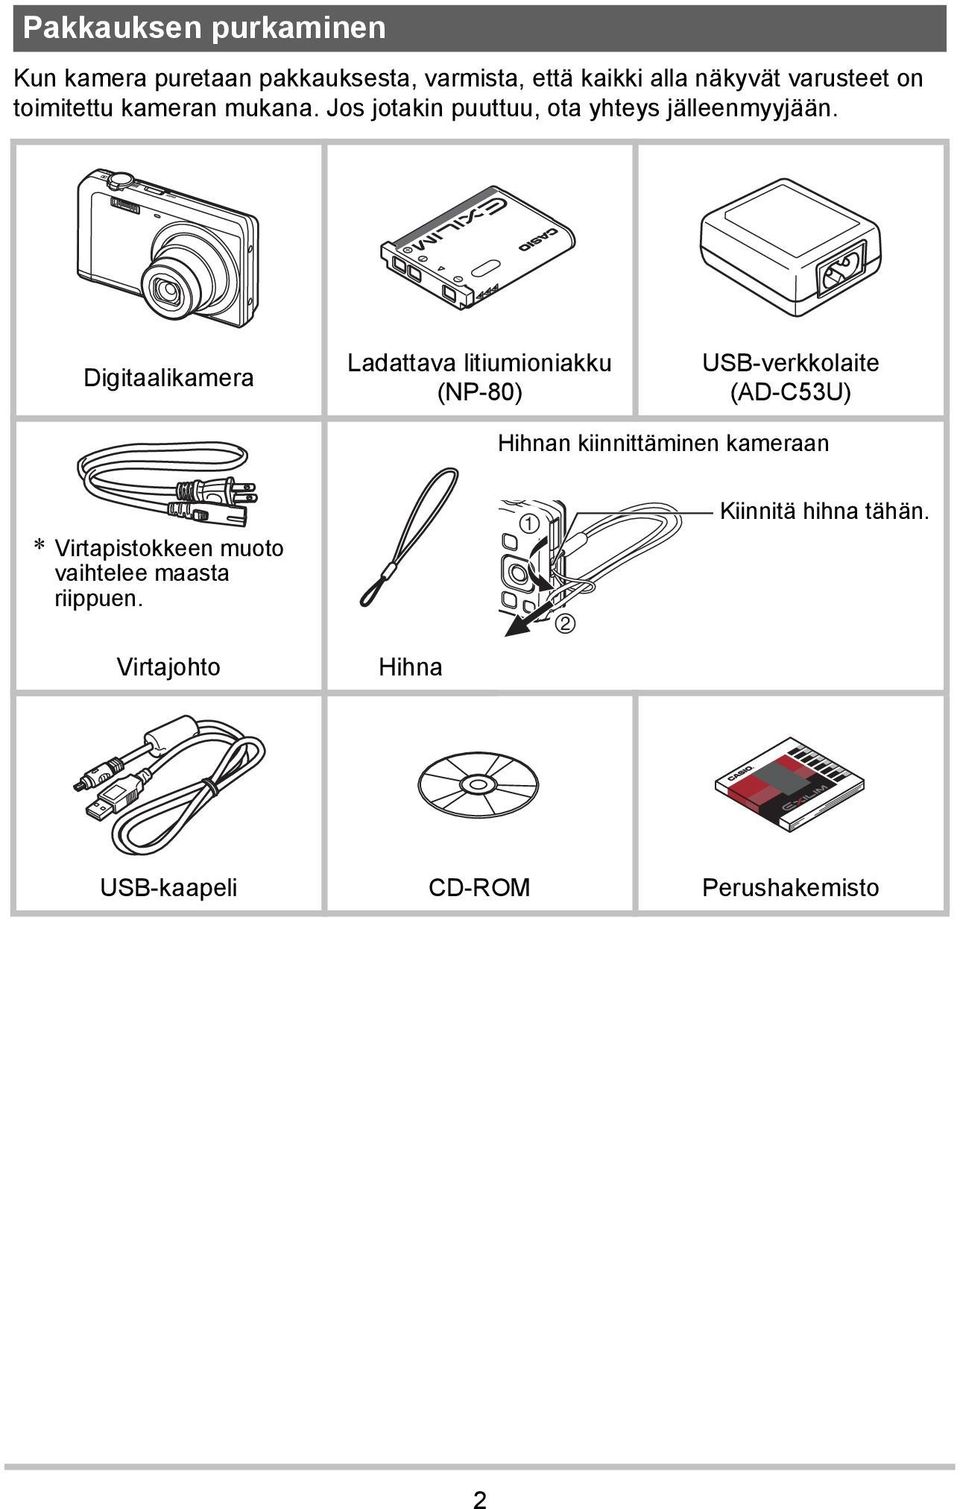 Digitaalikamera Ladattava litiumioniakku (NP-80) USB-verkkolaite (AD-C53U) Hihnan kiinnittäminen